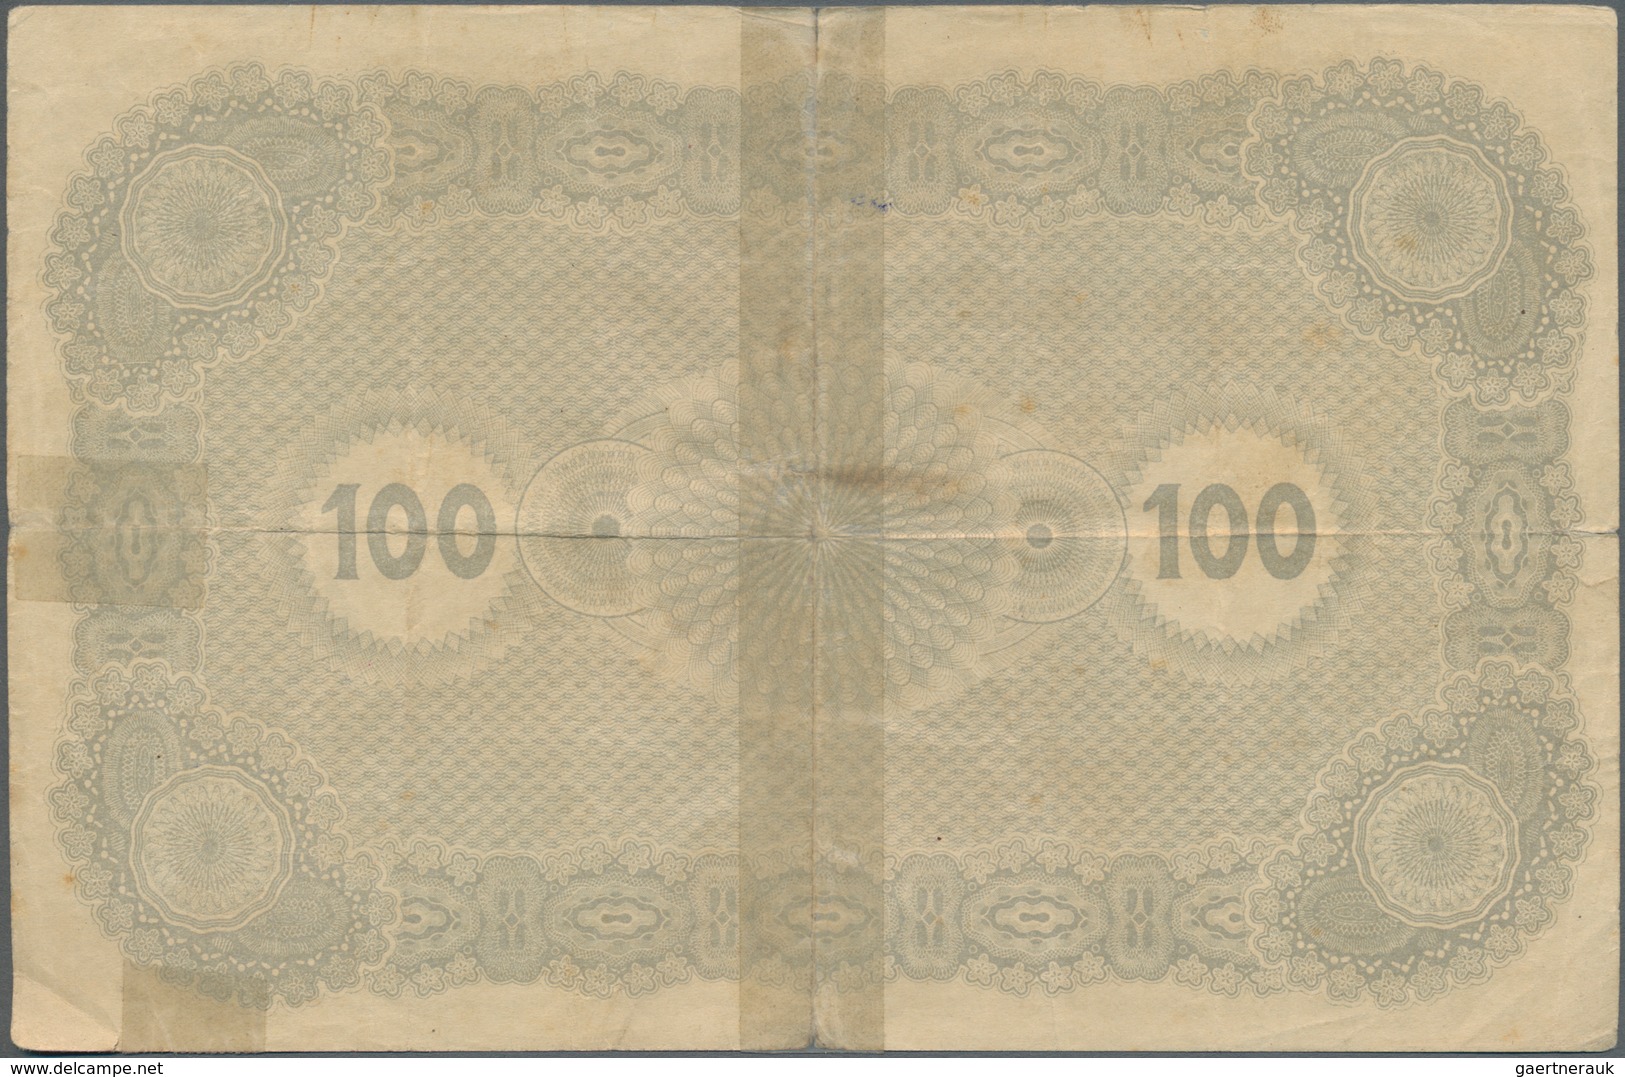 Estonia / Estland: Estonian Republic 5% Interest Debt Obligations 100 Marka Dated May 1st 1920, Not - Estland